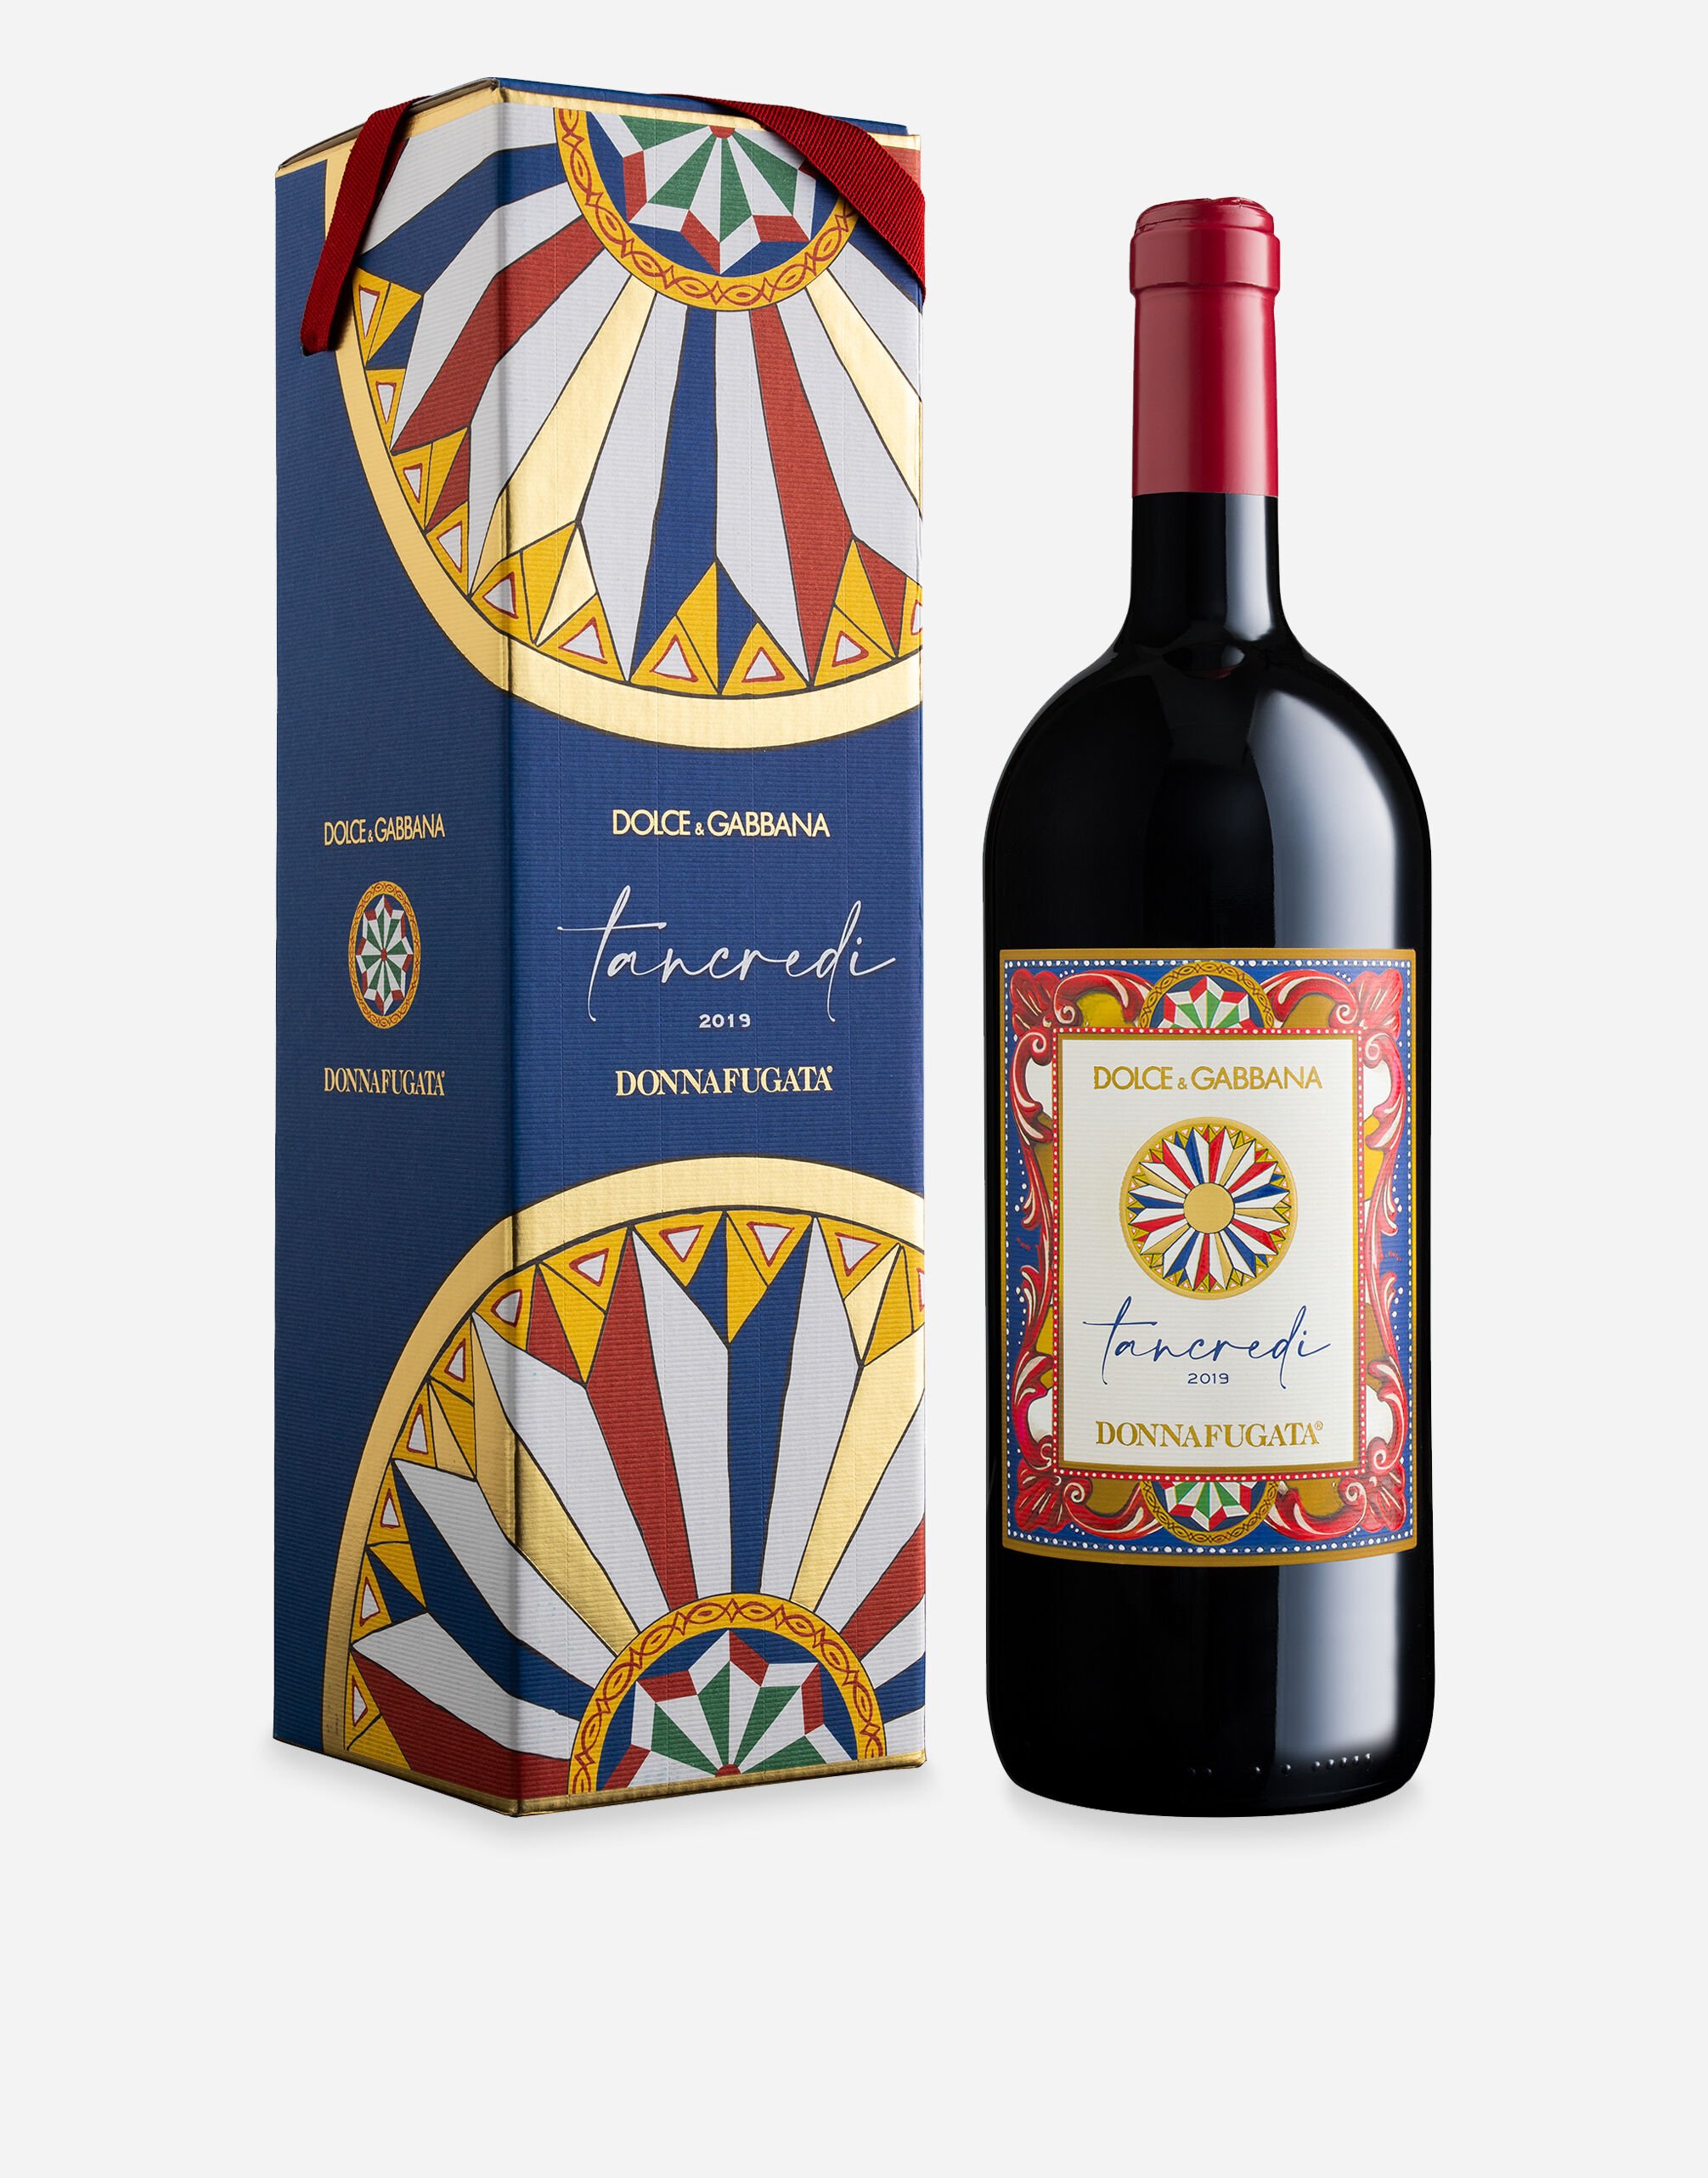 Dolce & Gabbana TANCREDI 2019 - Terre Siciliane IGT Rosso (Magnum 1.5L) Single box Multicolor PW0419RES15